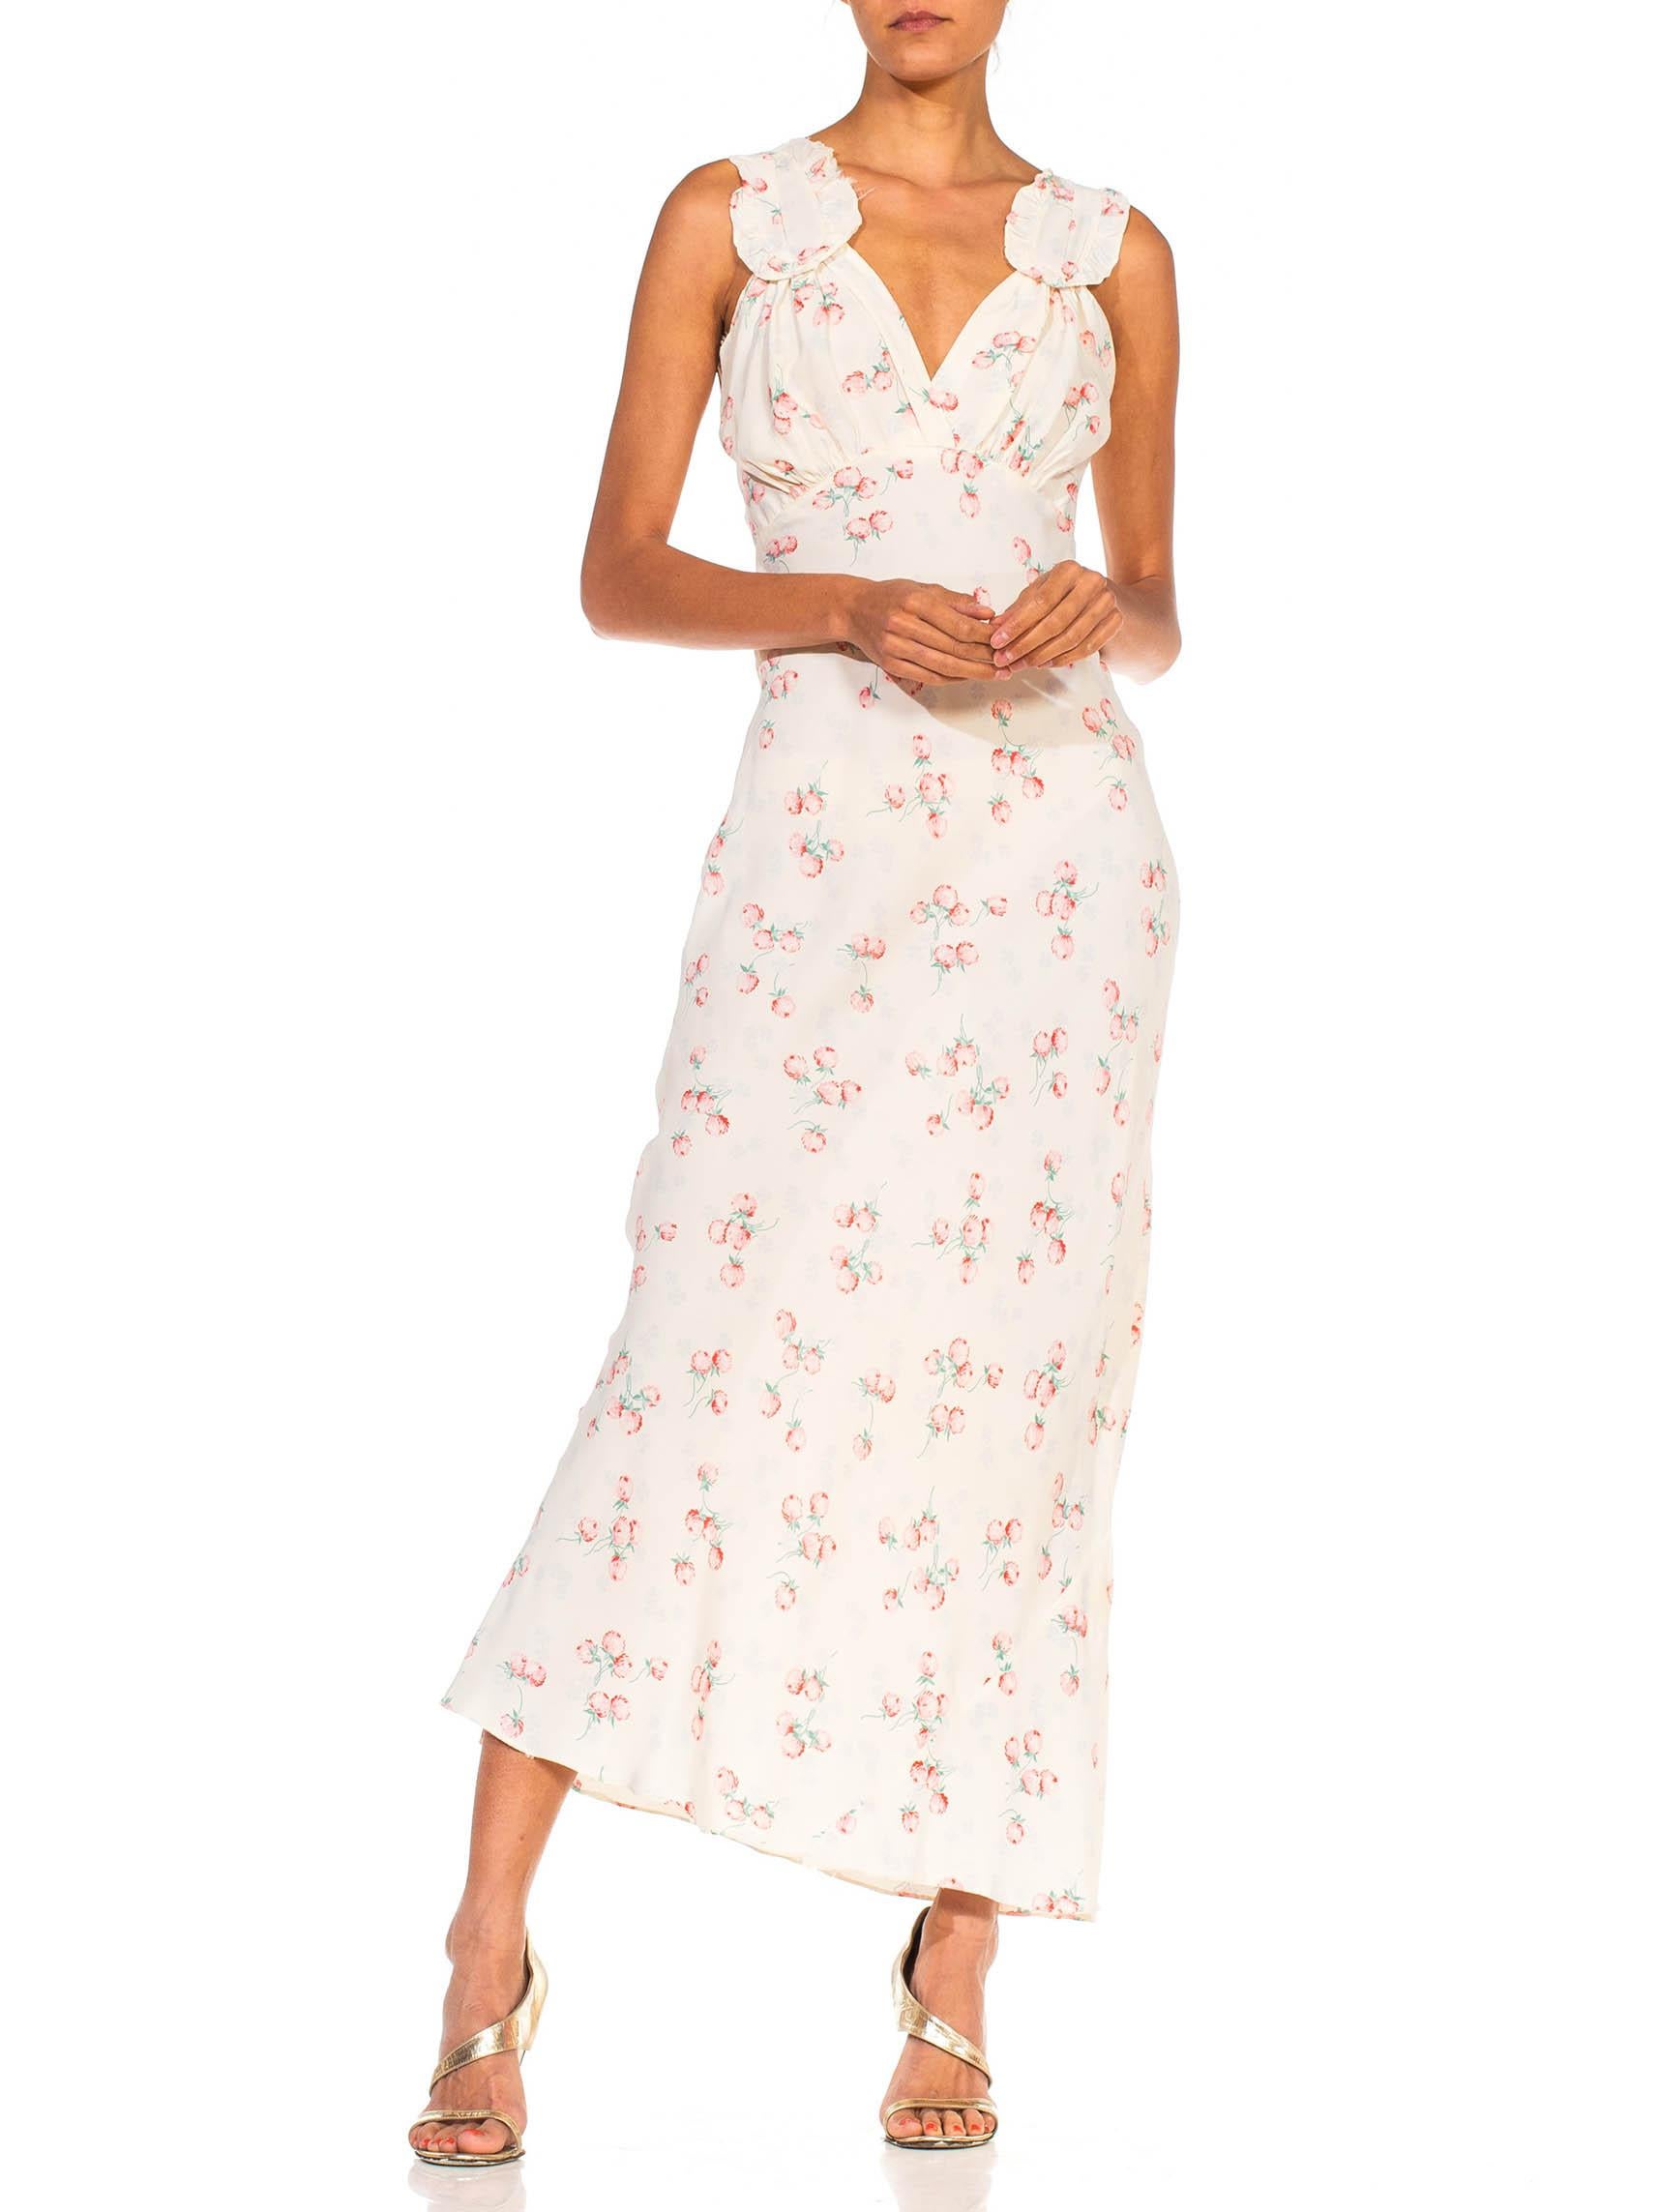 1940S White & Pink Rayon Bias Cut Floral Slip Dress Negligee 2